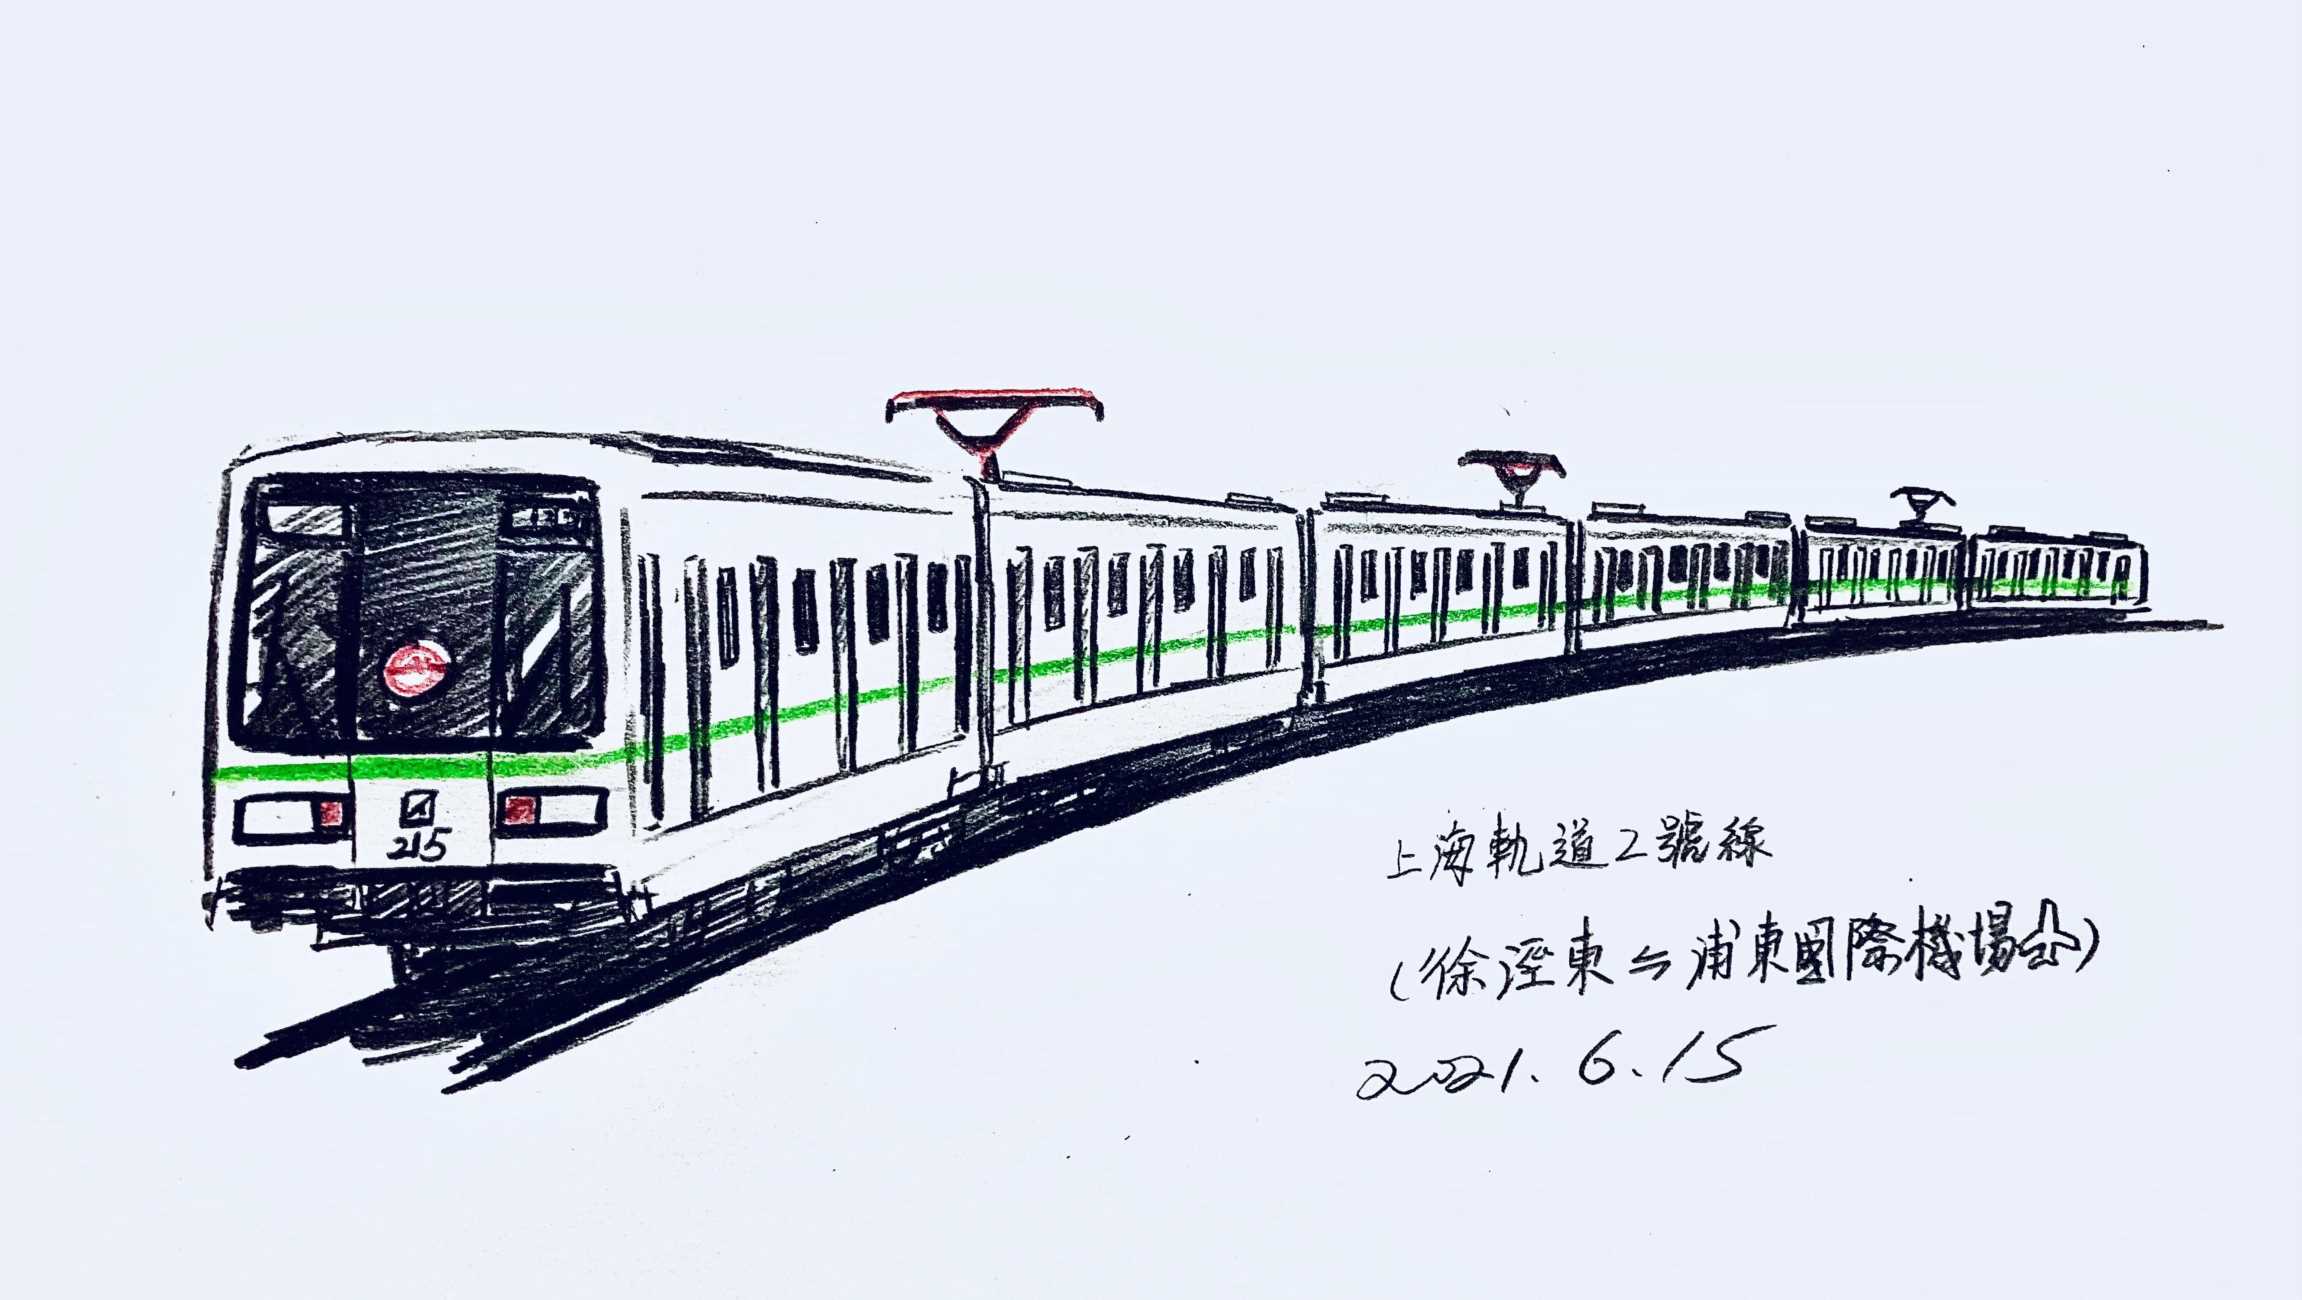 「上海轨道交通」小科普——上海轨道2号线